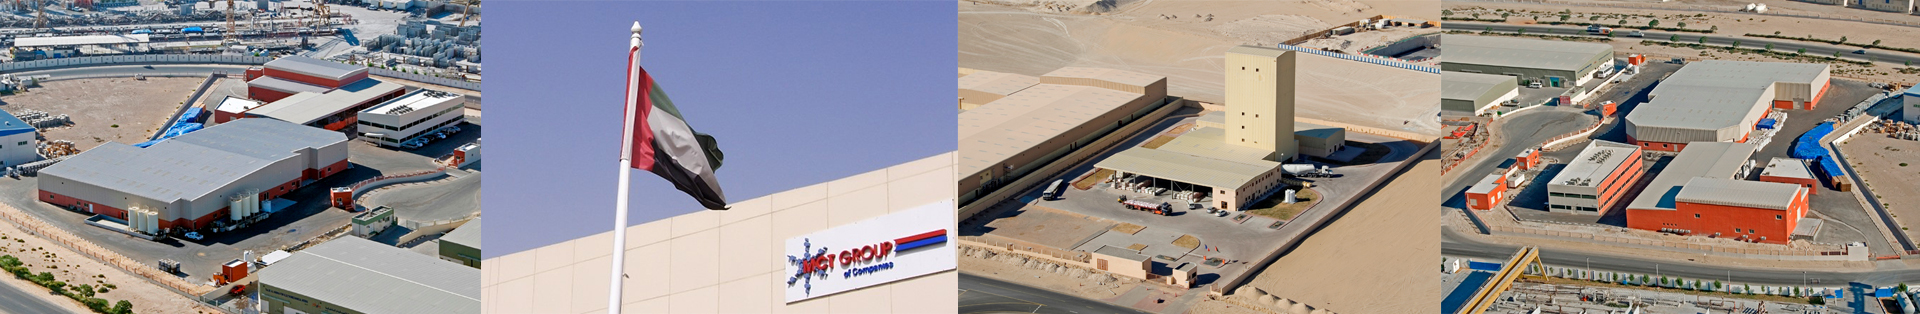 MCT Group of Companies UAE